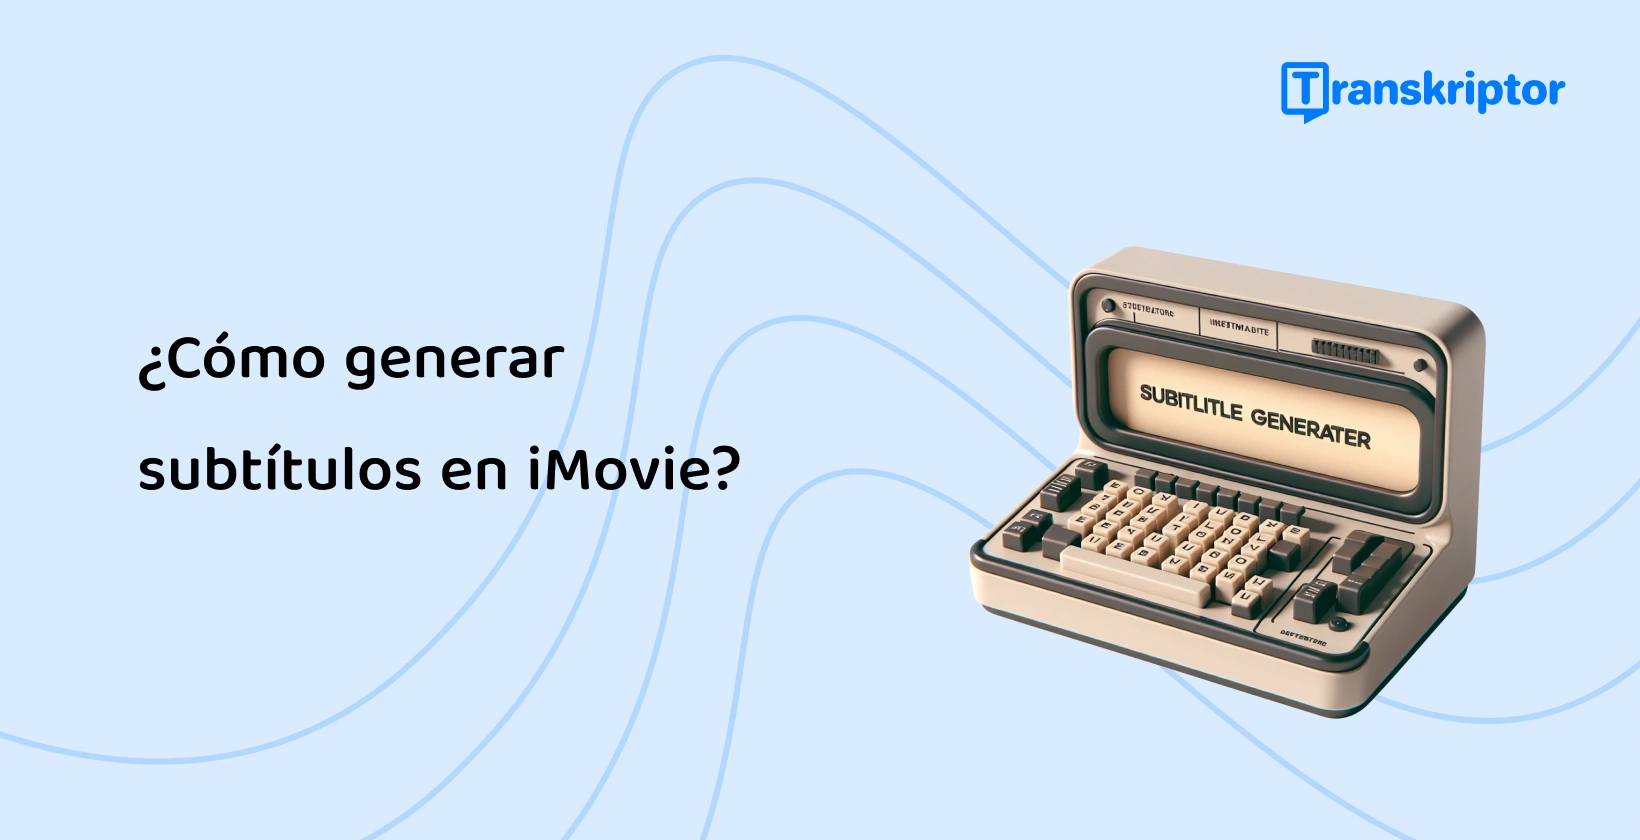 Una máquina de escribir vintage con generador de subtítulos que simboliza el proceso de creación de subtítulos en iMovie, mejorando la accesibilidad del video.